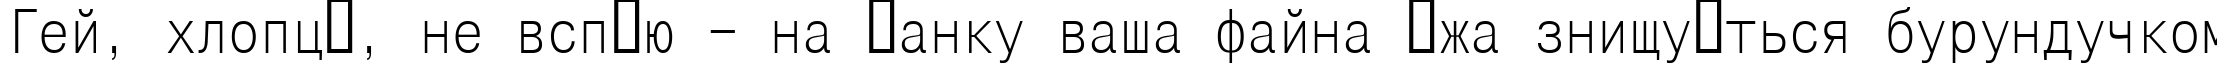 Пример написания шрифтом Mono Condensed текста на украинском